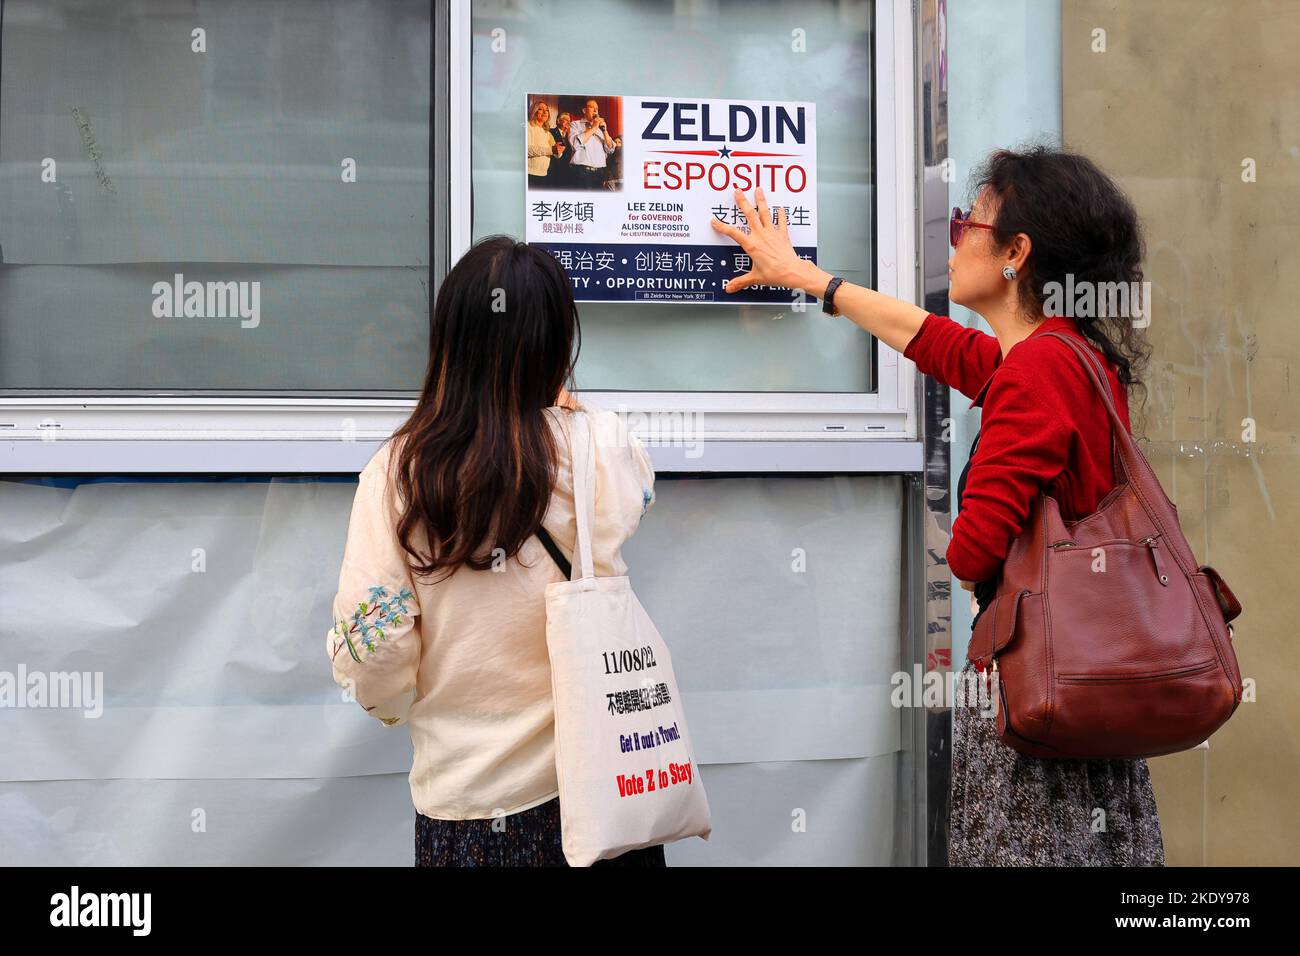 Deux agents de la campagne politique asiatique américaine placent une affiche Zeldin/Esposito sur une fenêtre d'un bâtiment dans le quartier chinois de Manhattan, à 6 novembre 2022. Banque D'Images